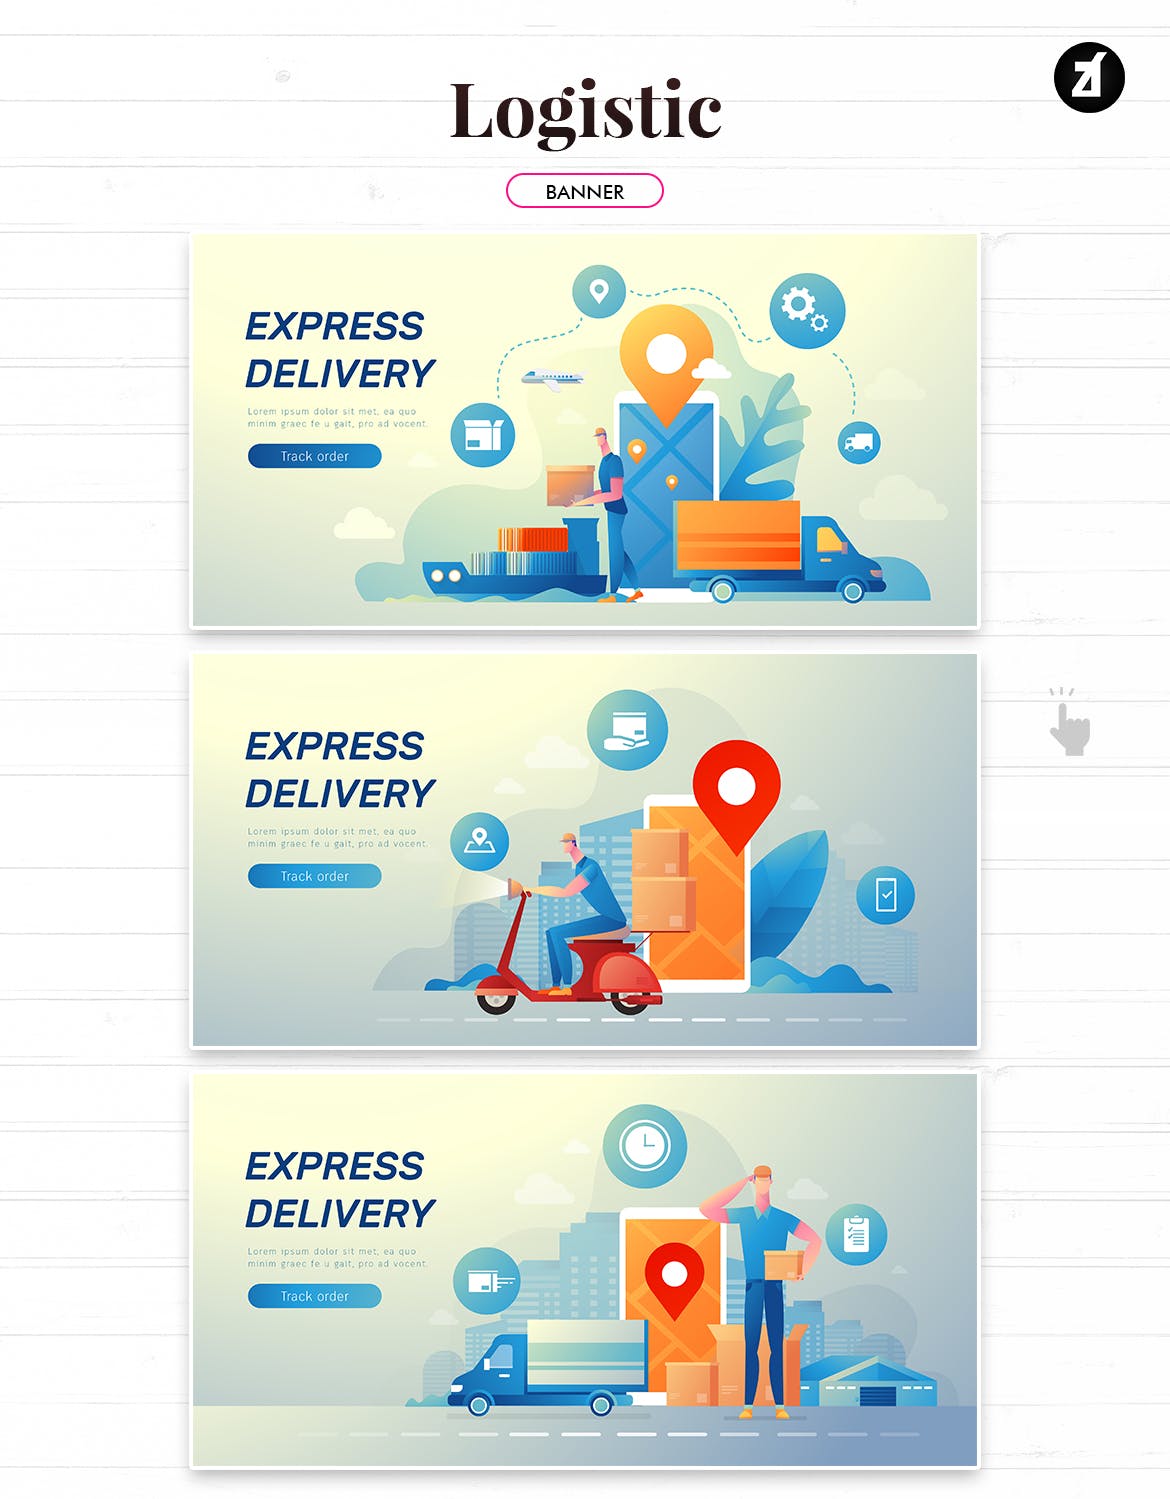 物流配送主题矢量插画设计素材 Logistic and delivery illustration with layout插图(4)